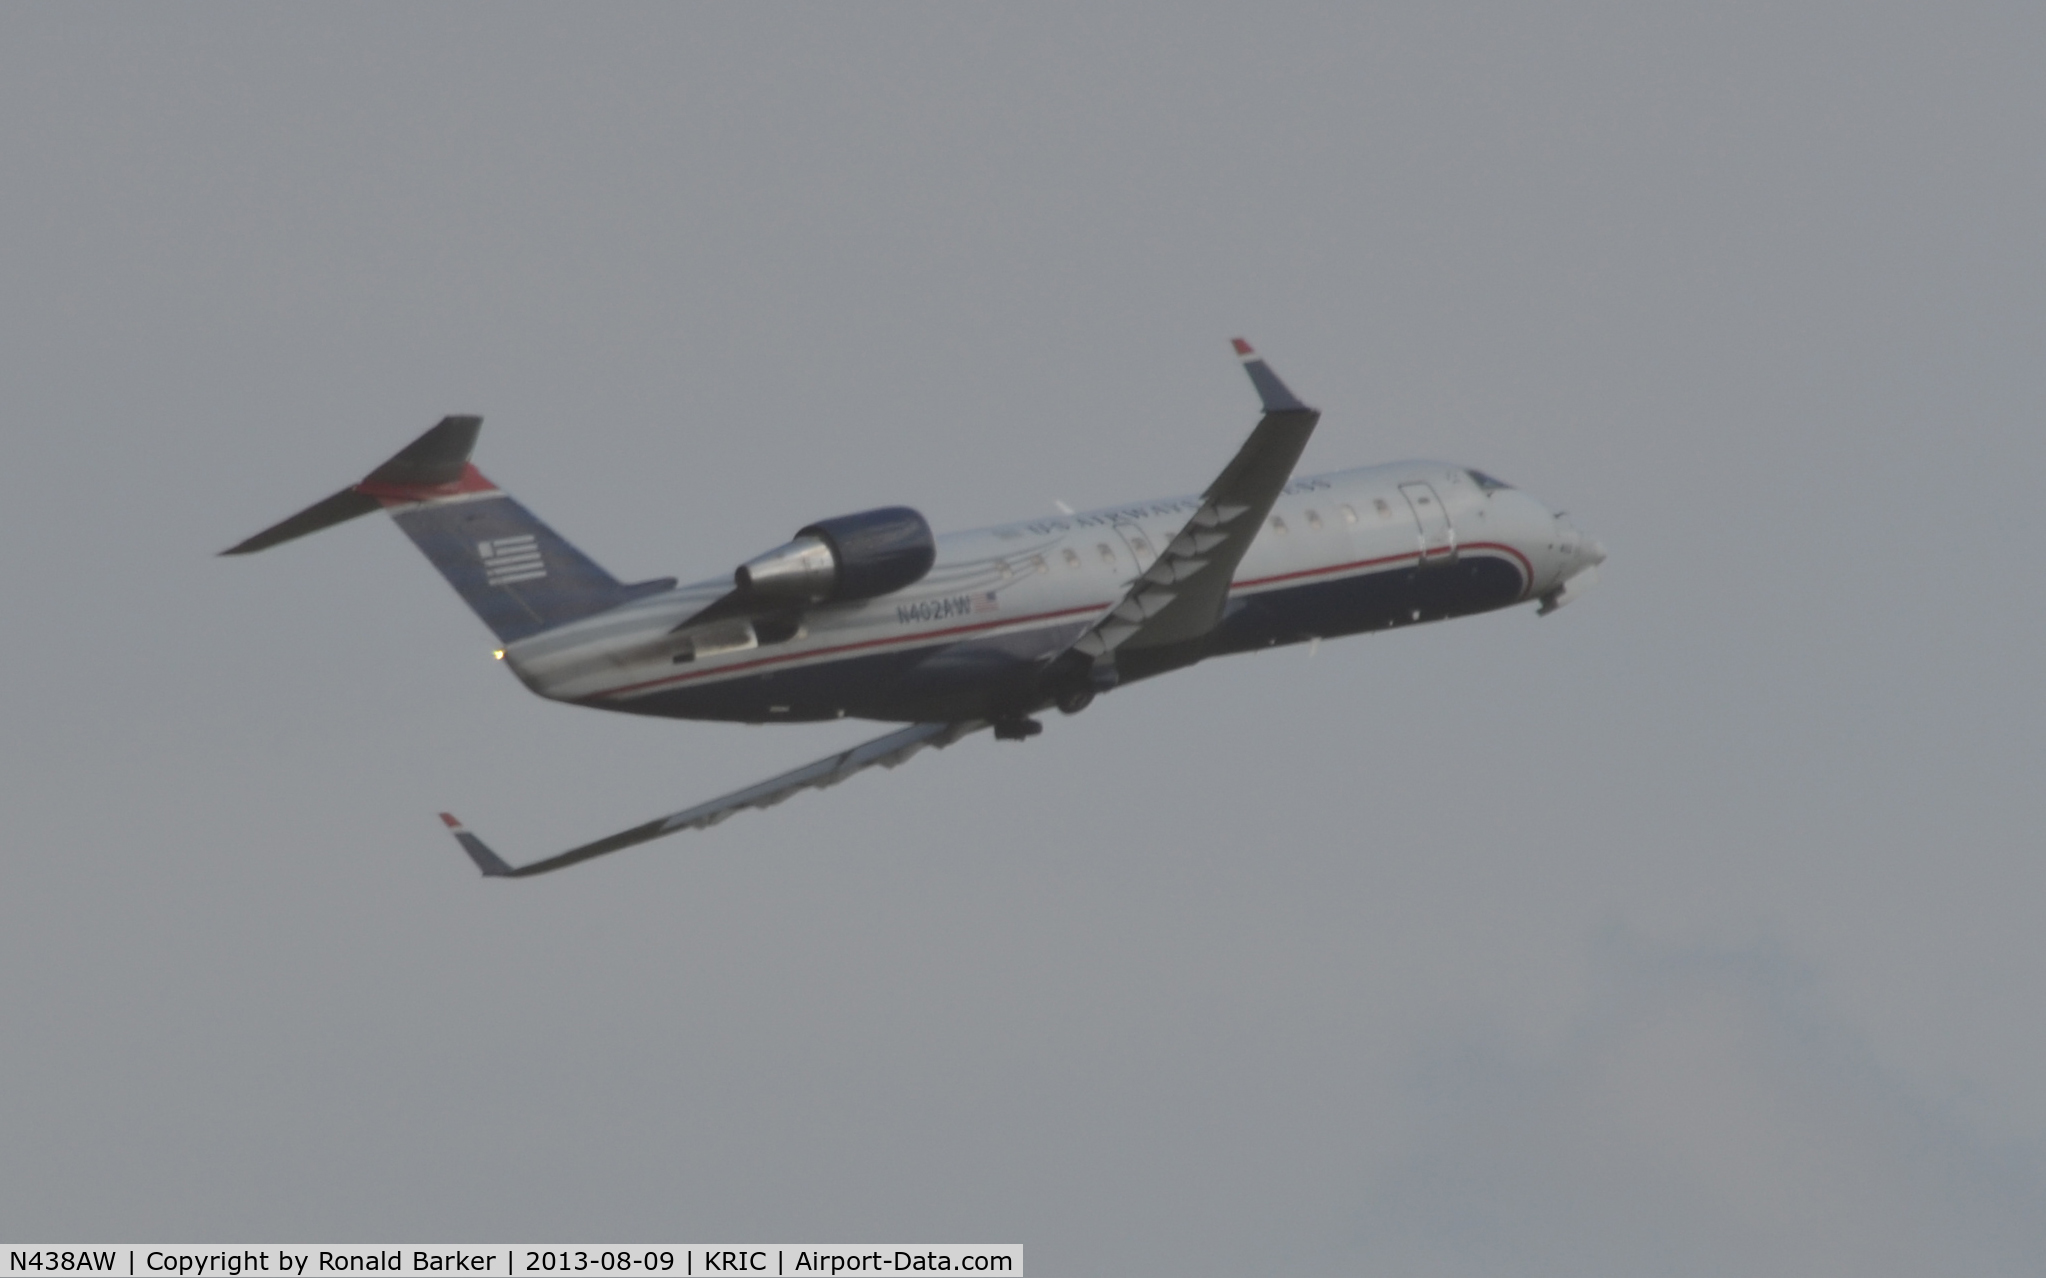 N438AW, 2003 Bombardier CRJ-200LR (CL-600-2B19) C/N 7748, Takeoff Richmond